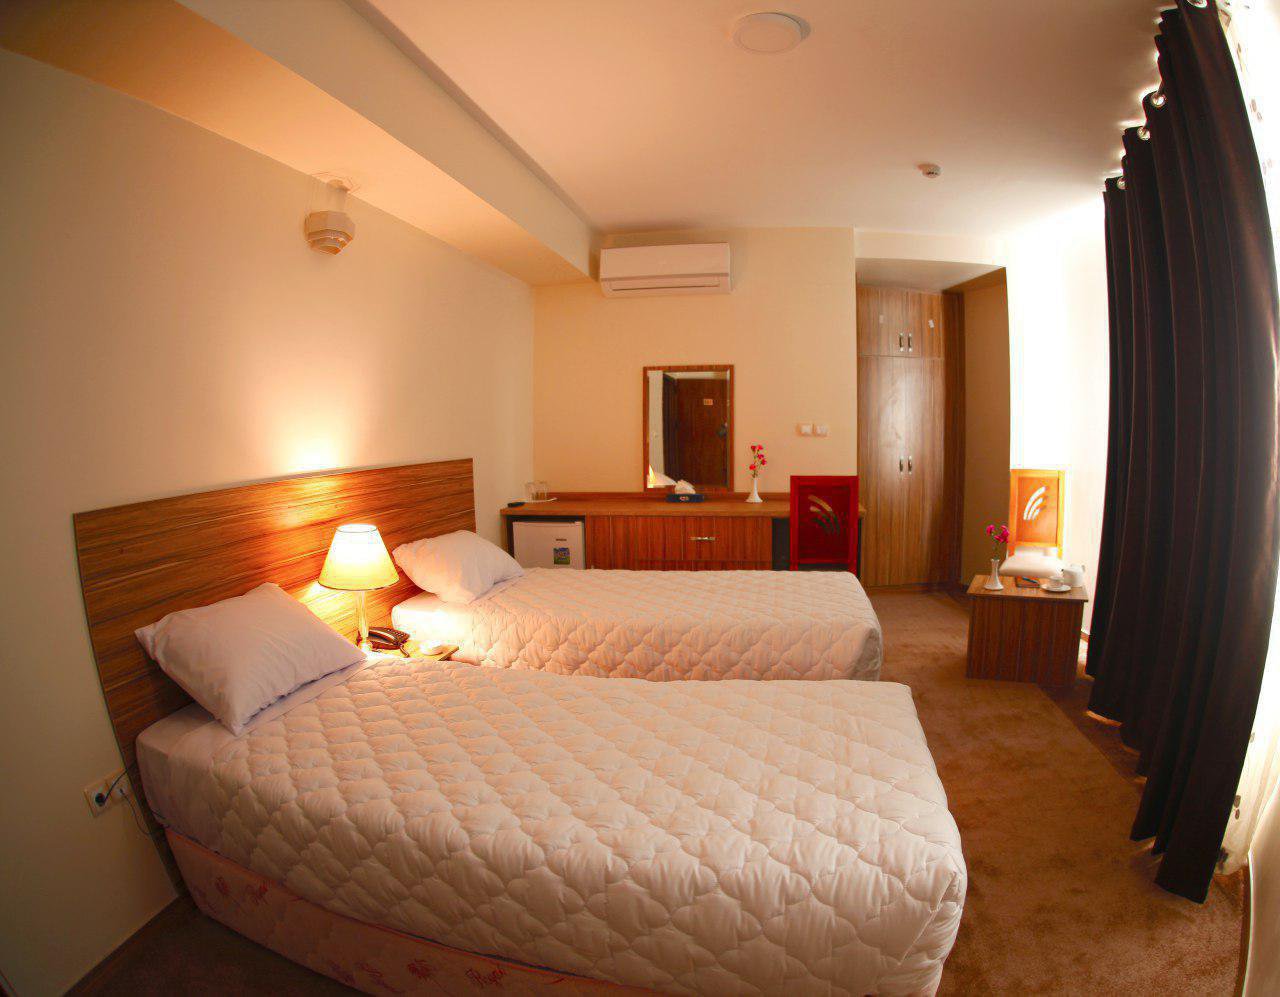 هتل نصیر الملک 5 هتل نصیر الملک شیراز